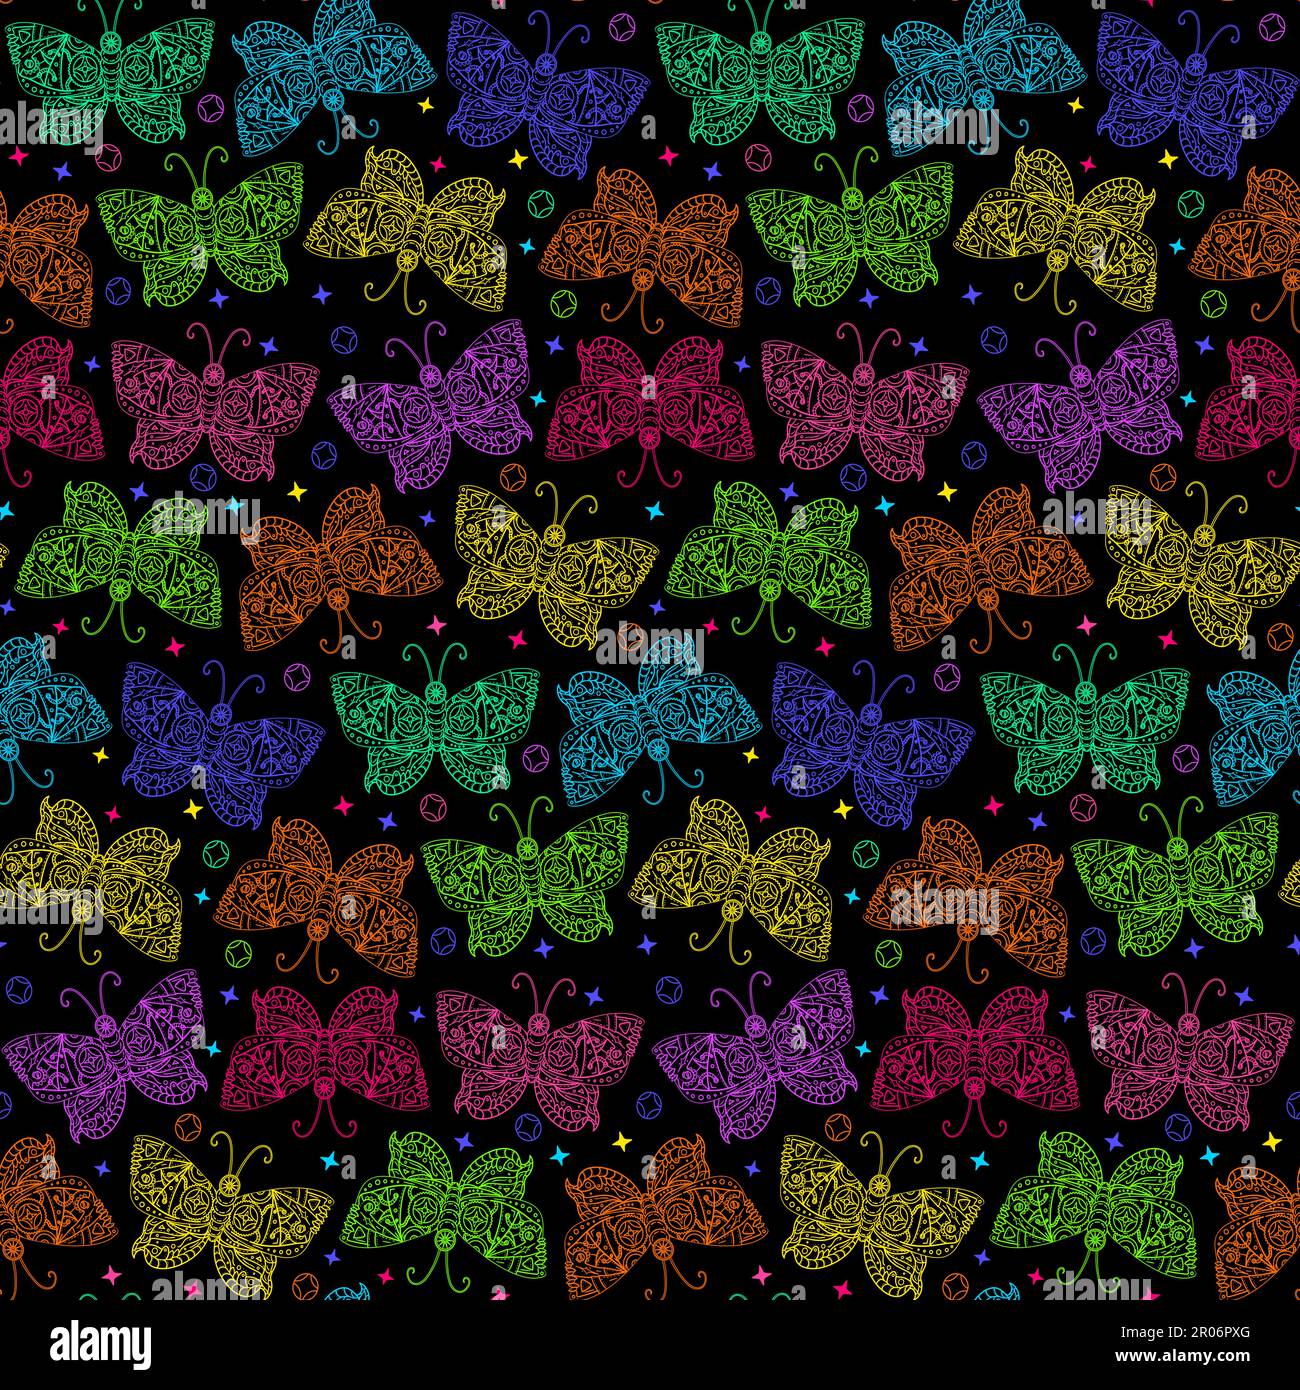 Neon-Steampunk-Schmetterlingsmuster mit leuchtenden tropischen Motten, verziert mit zauberhaften mystischen Ornaten auf Flügeln. Verzierung zum Bedrucken von Textilien Stock Vektor